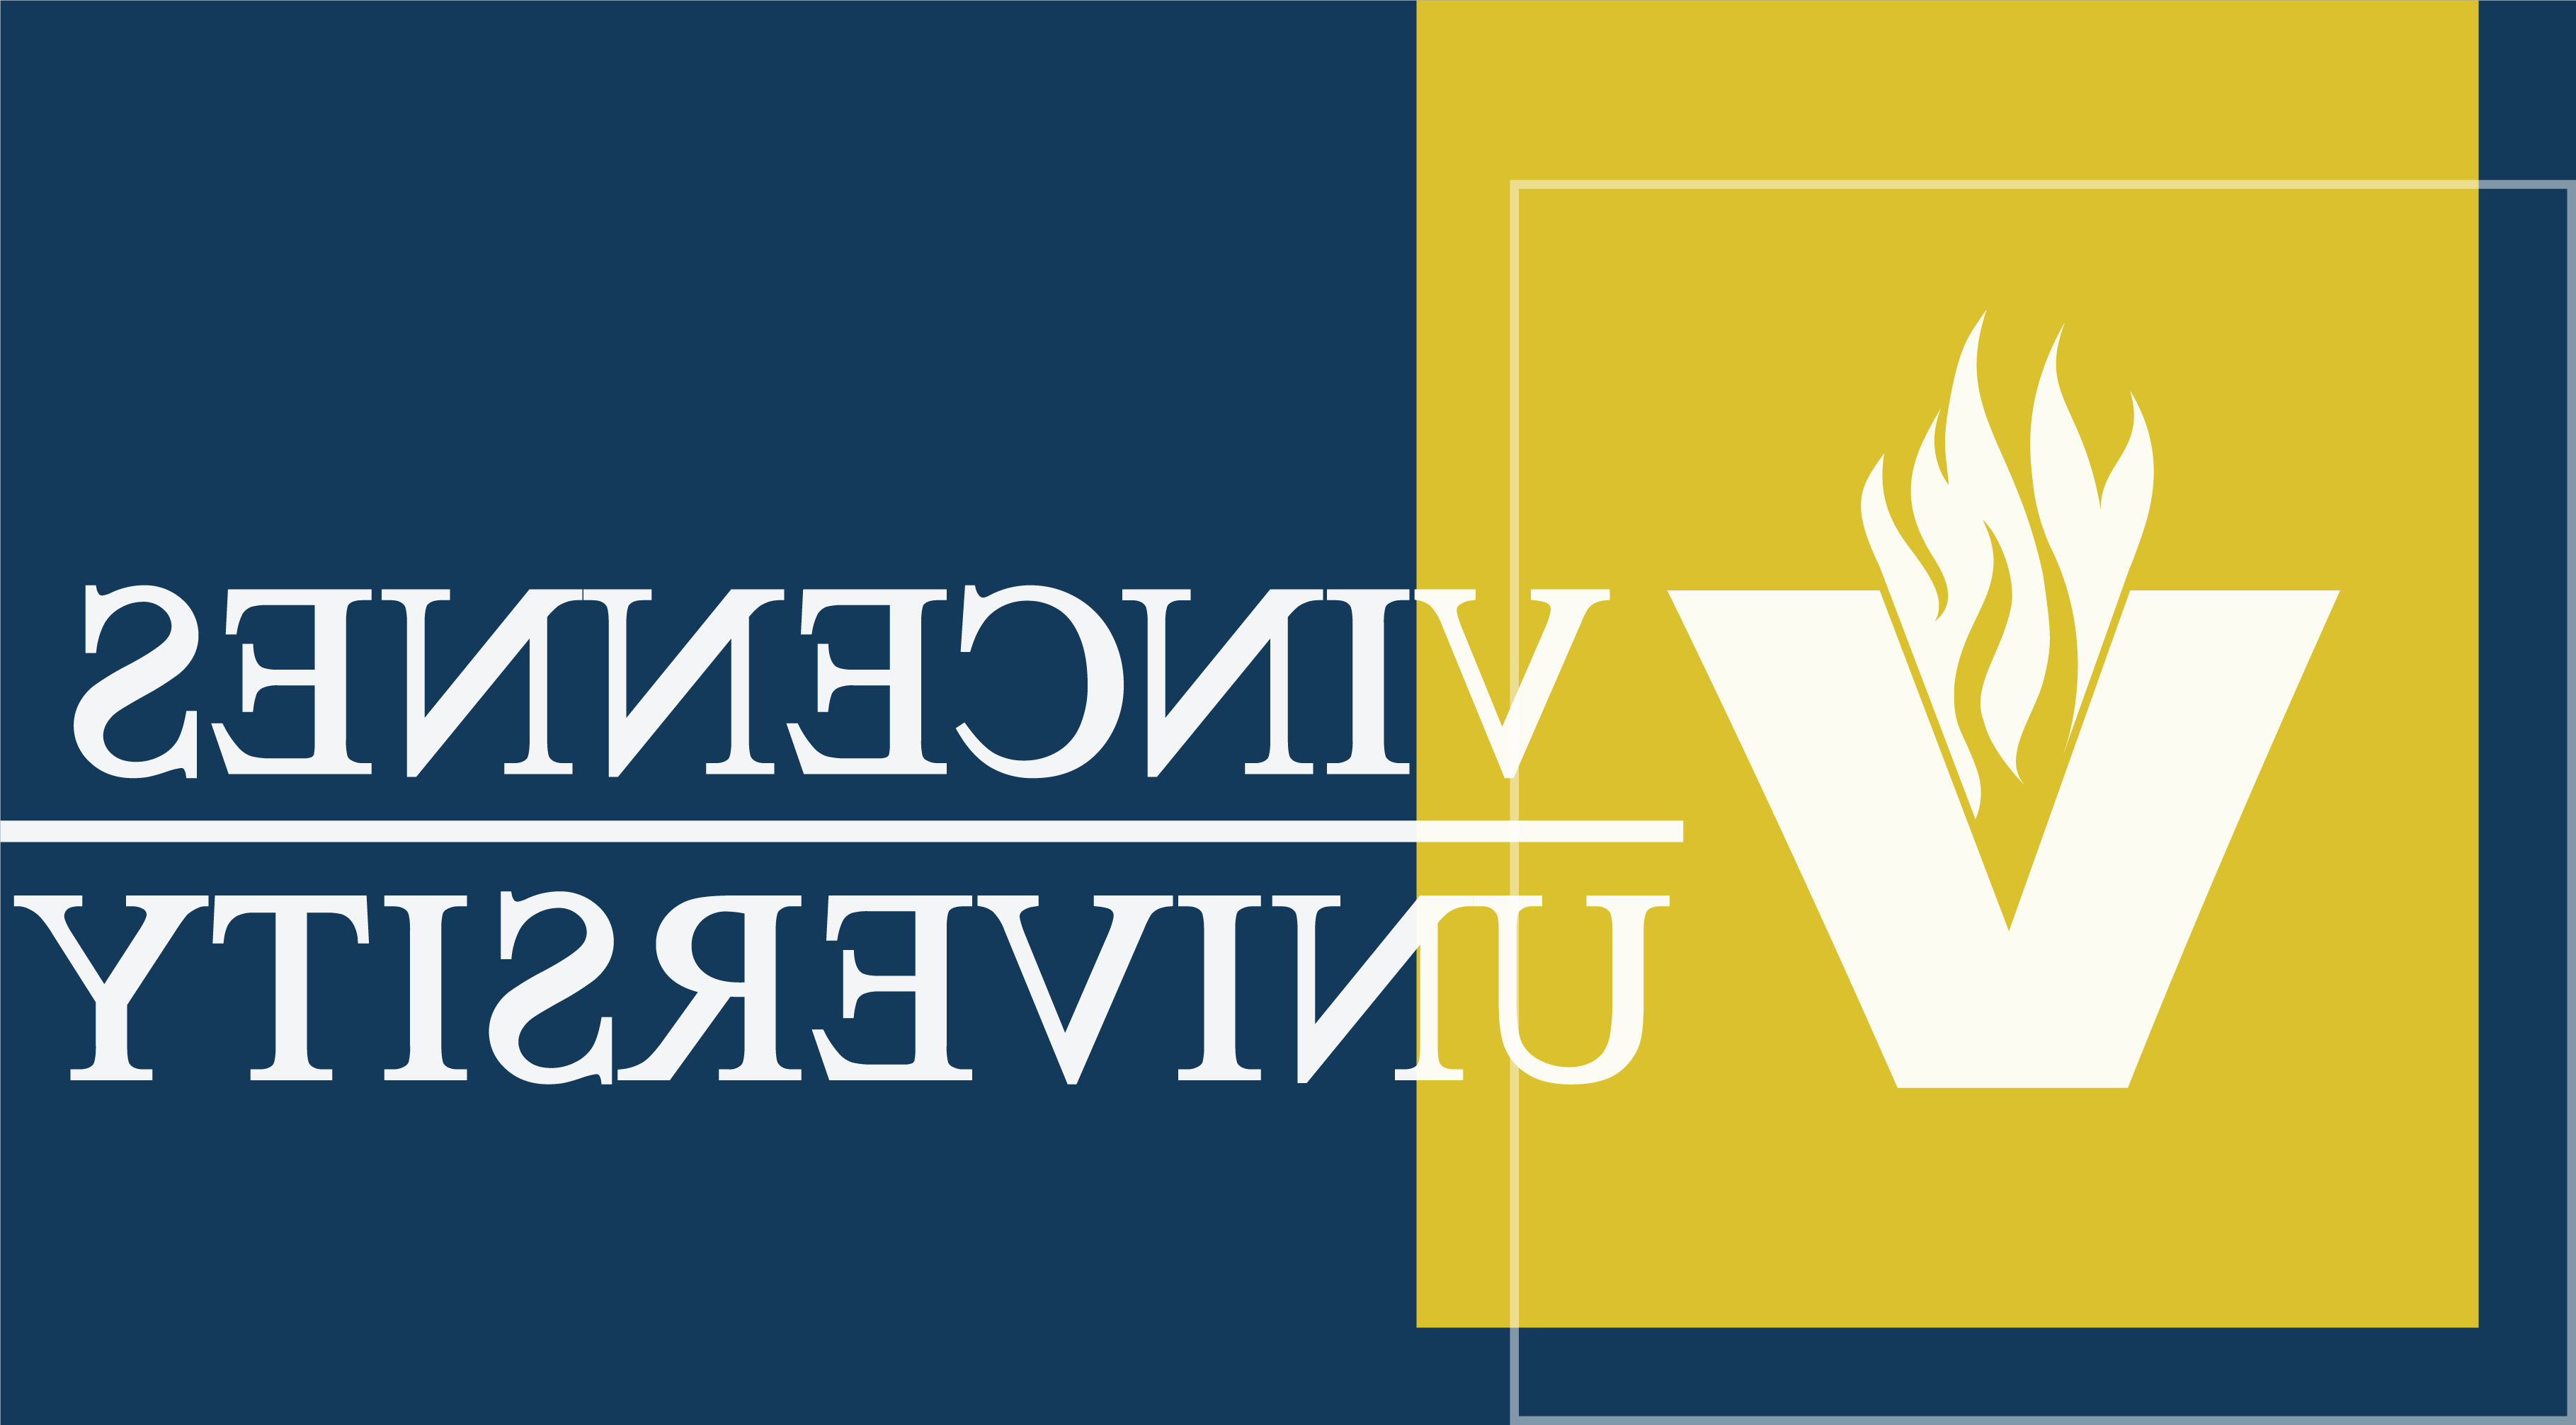 文森斯大学的校徽由蓝、白、黄三色组成